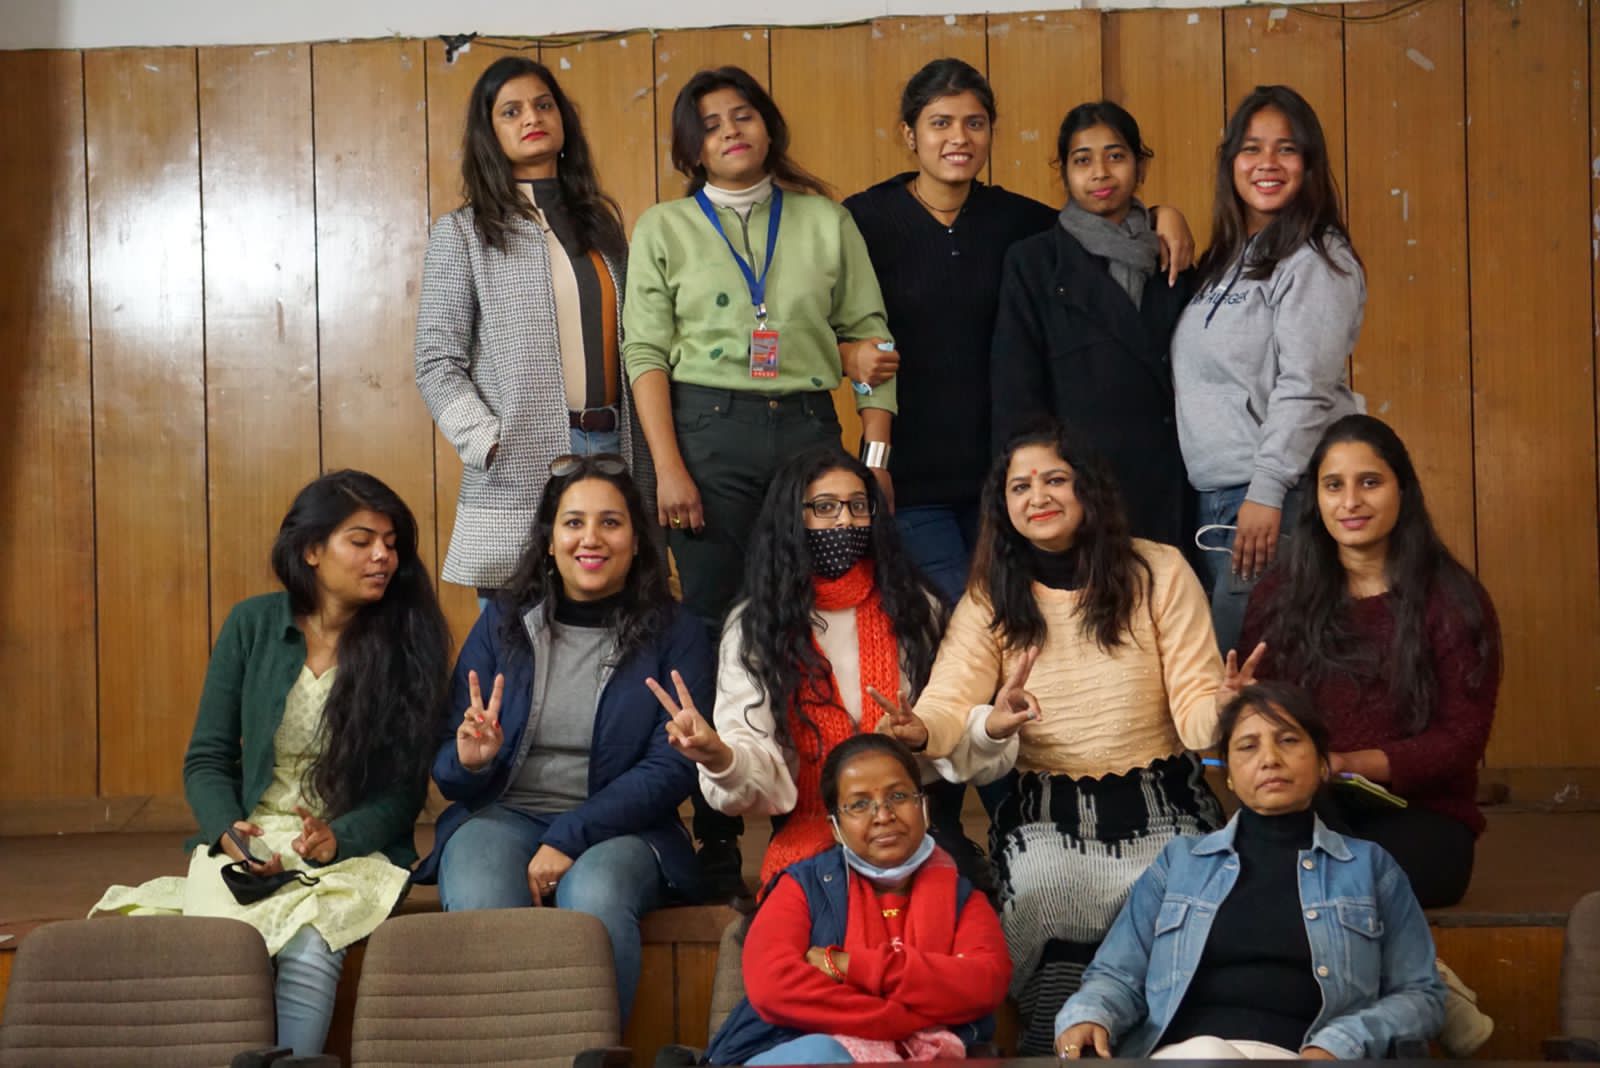 महिला पत्रकारों का परिचय सम्मेलन आयोजित, दी सांस्कृतिक प्रस्तुति